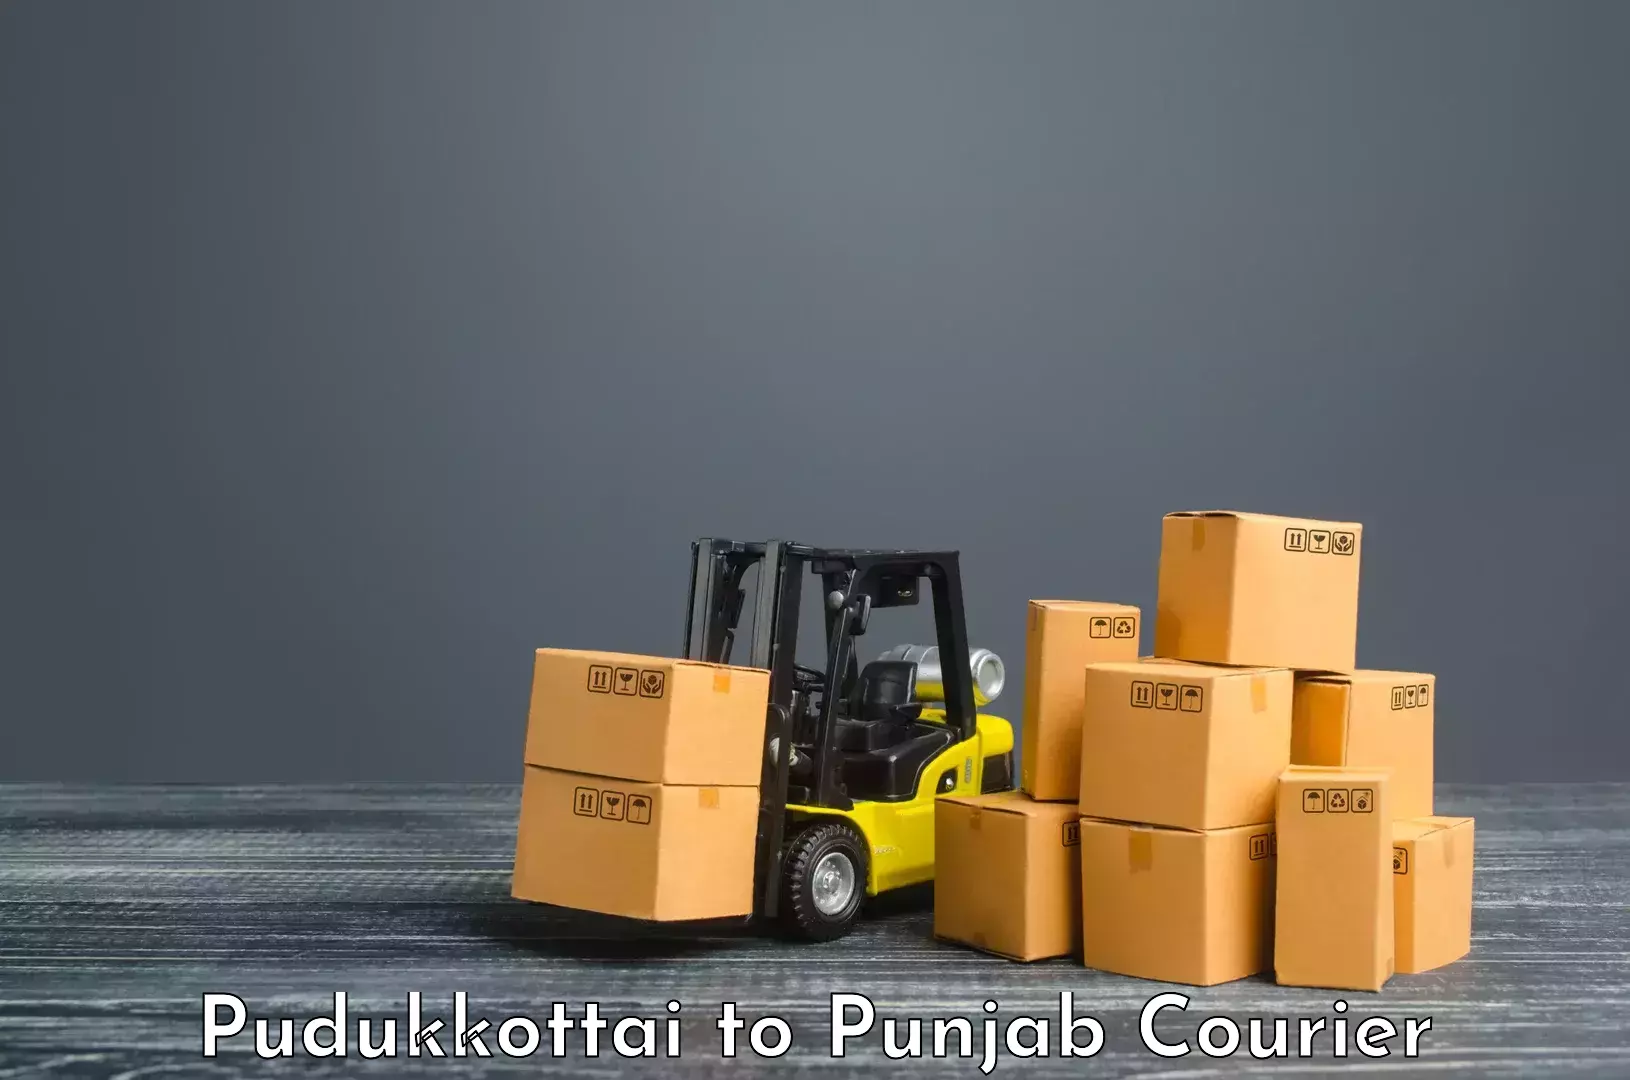 Efficient cargo handling Pudukkottai to Moga